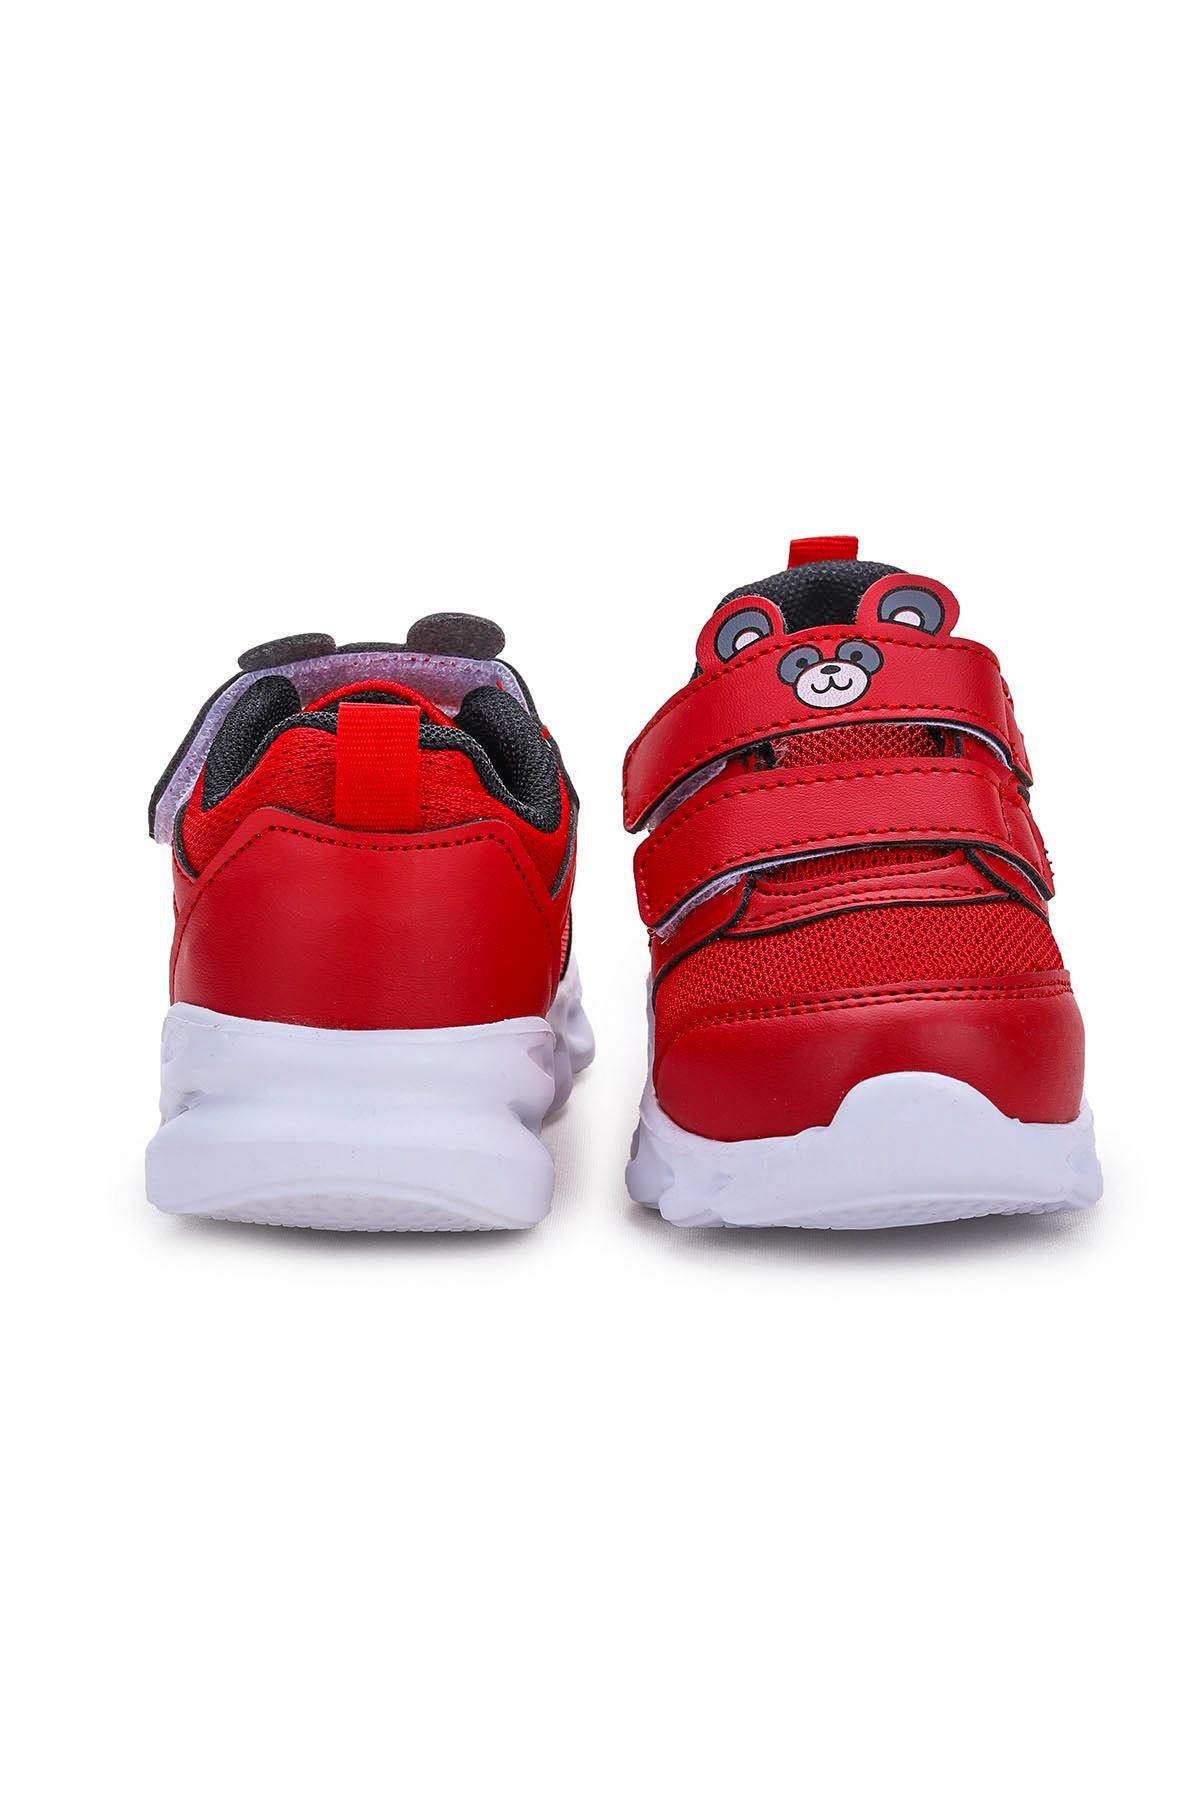 Caty Işıklı Cırtlı Kız/Erkek Çocuk Spor Ayakkabı Kırmızı